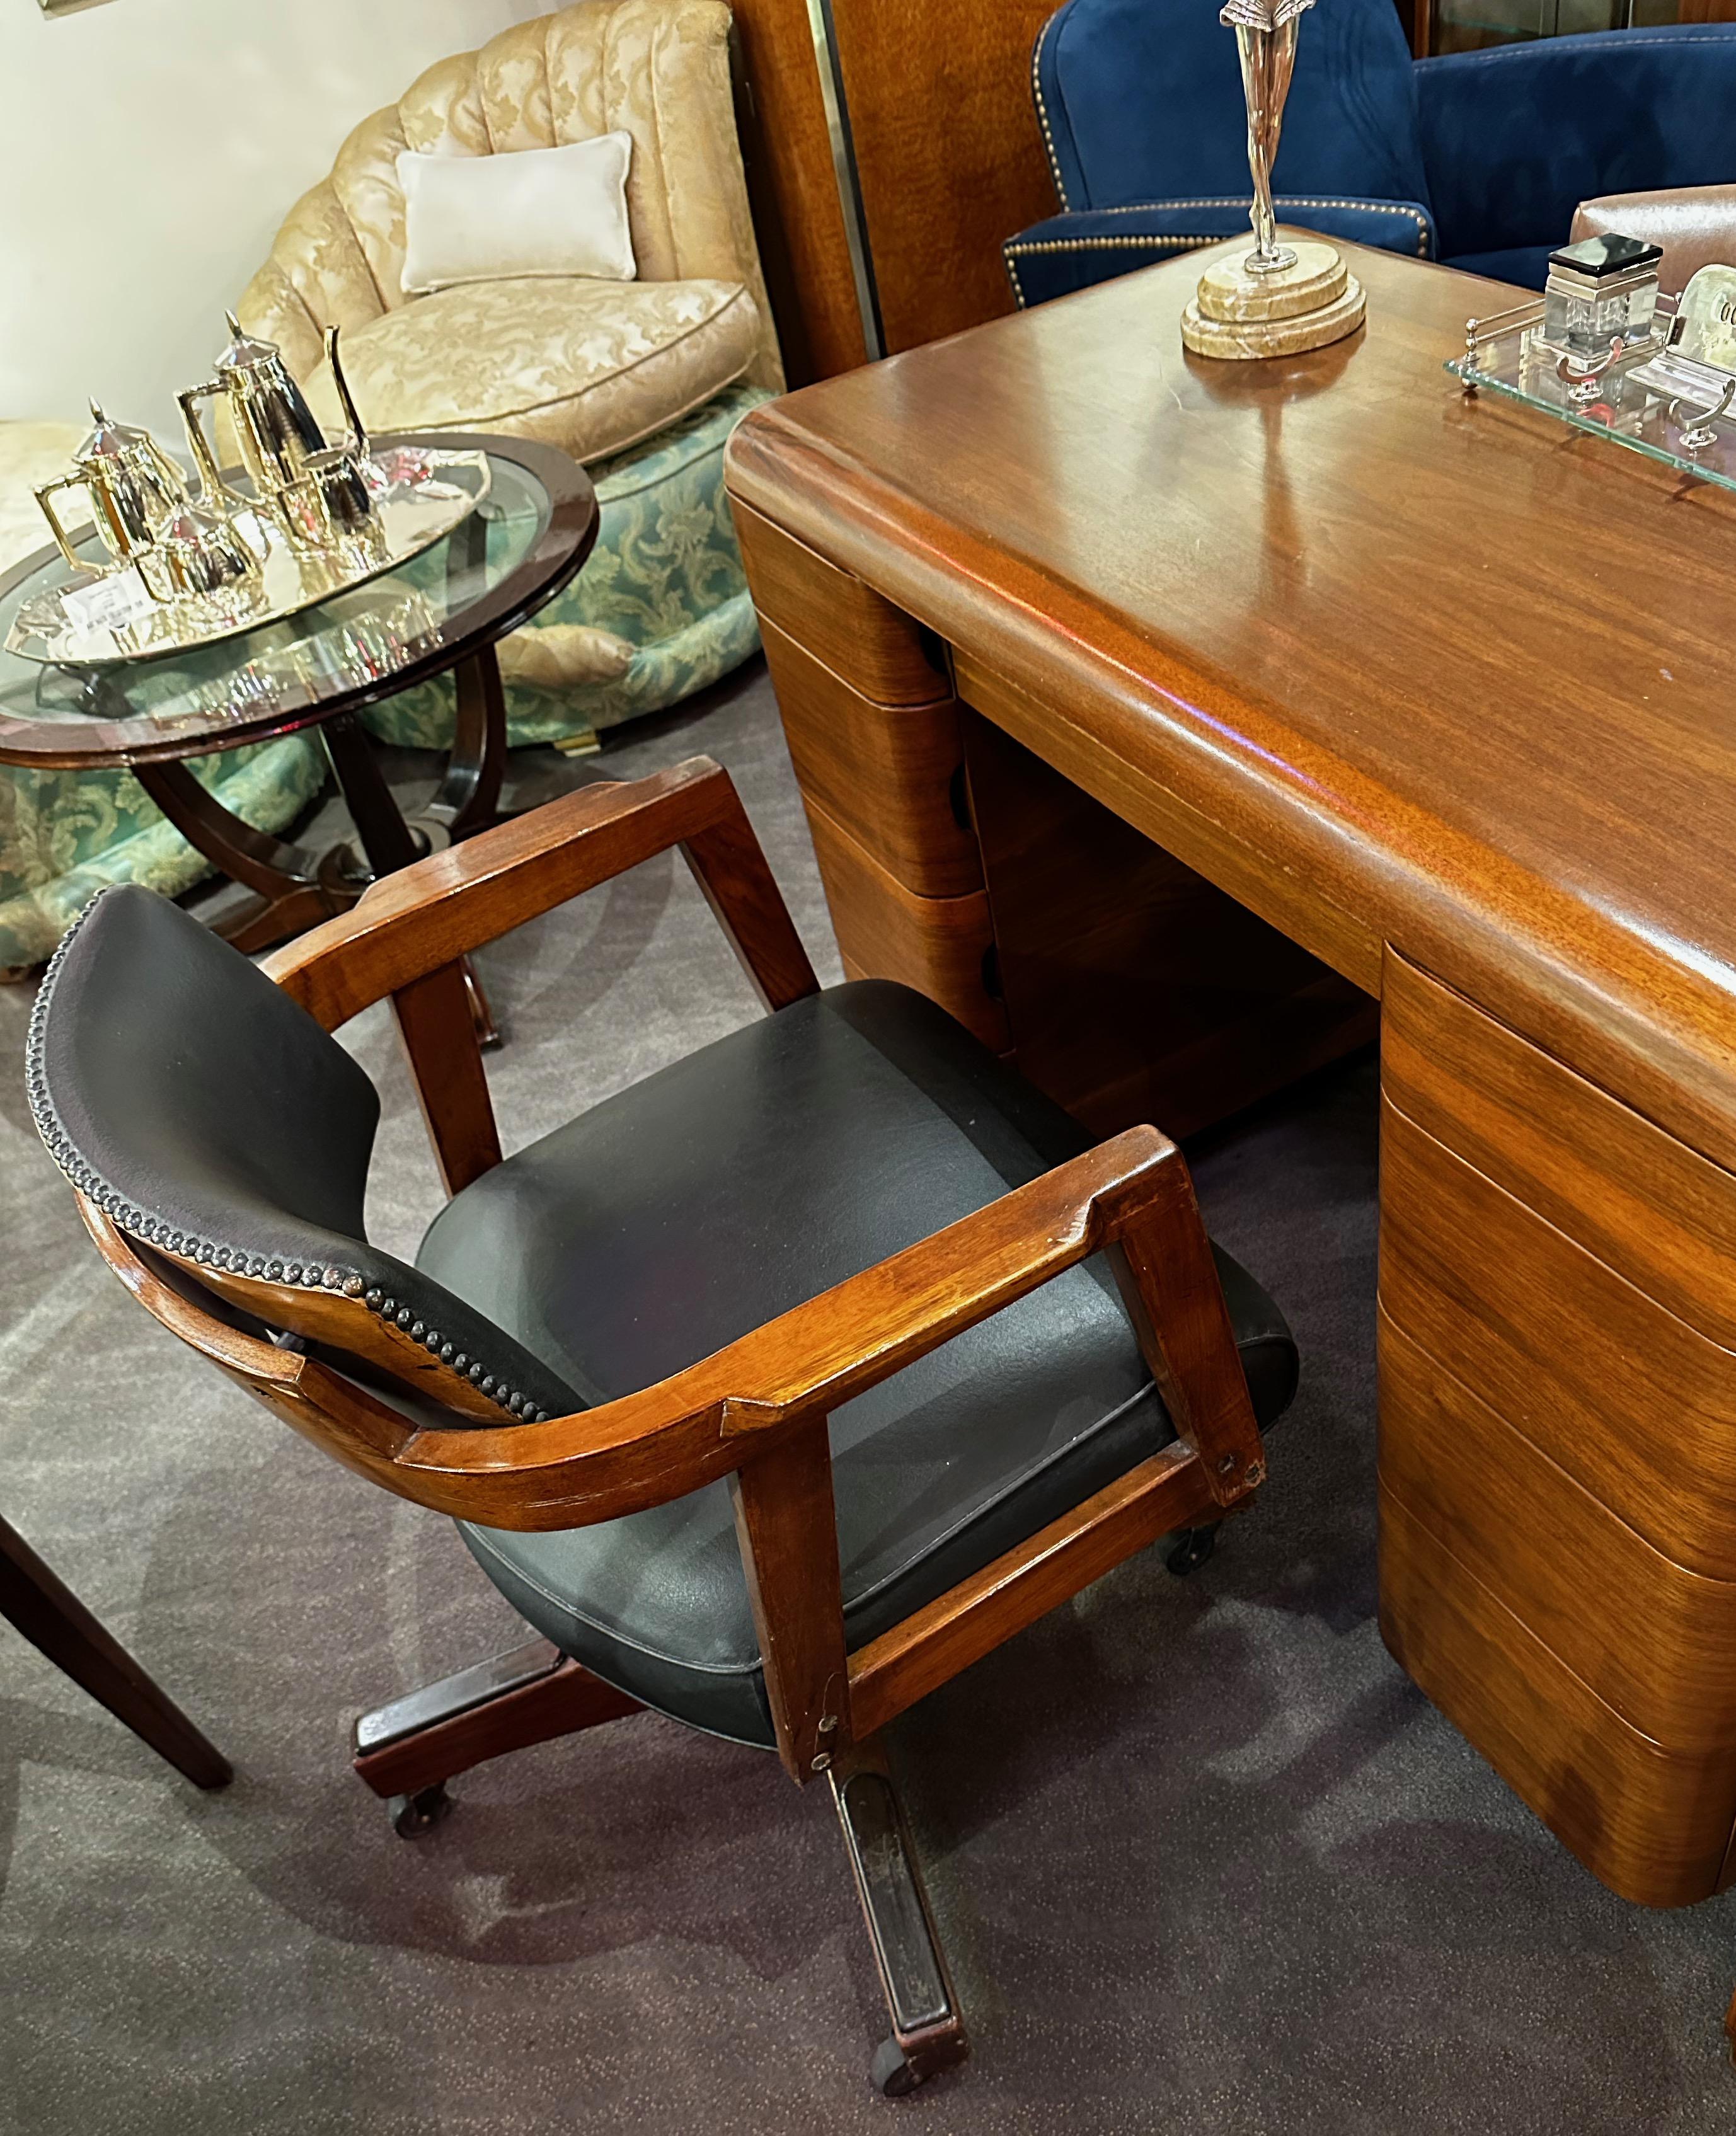 Vintage Art Deco Bürostuhl, ältere Restaurierung mit verstellbarer Sitzhöhe vom Holzsockel aus. Dieser klassische Bürostuhl ist bereit, weitere 50 Jahre zu dienen. Das Holz wurde in einer atemberaubenden dunklen Mahagoniholzbeize aufgefrischt und